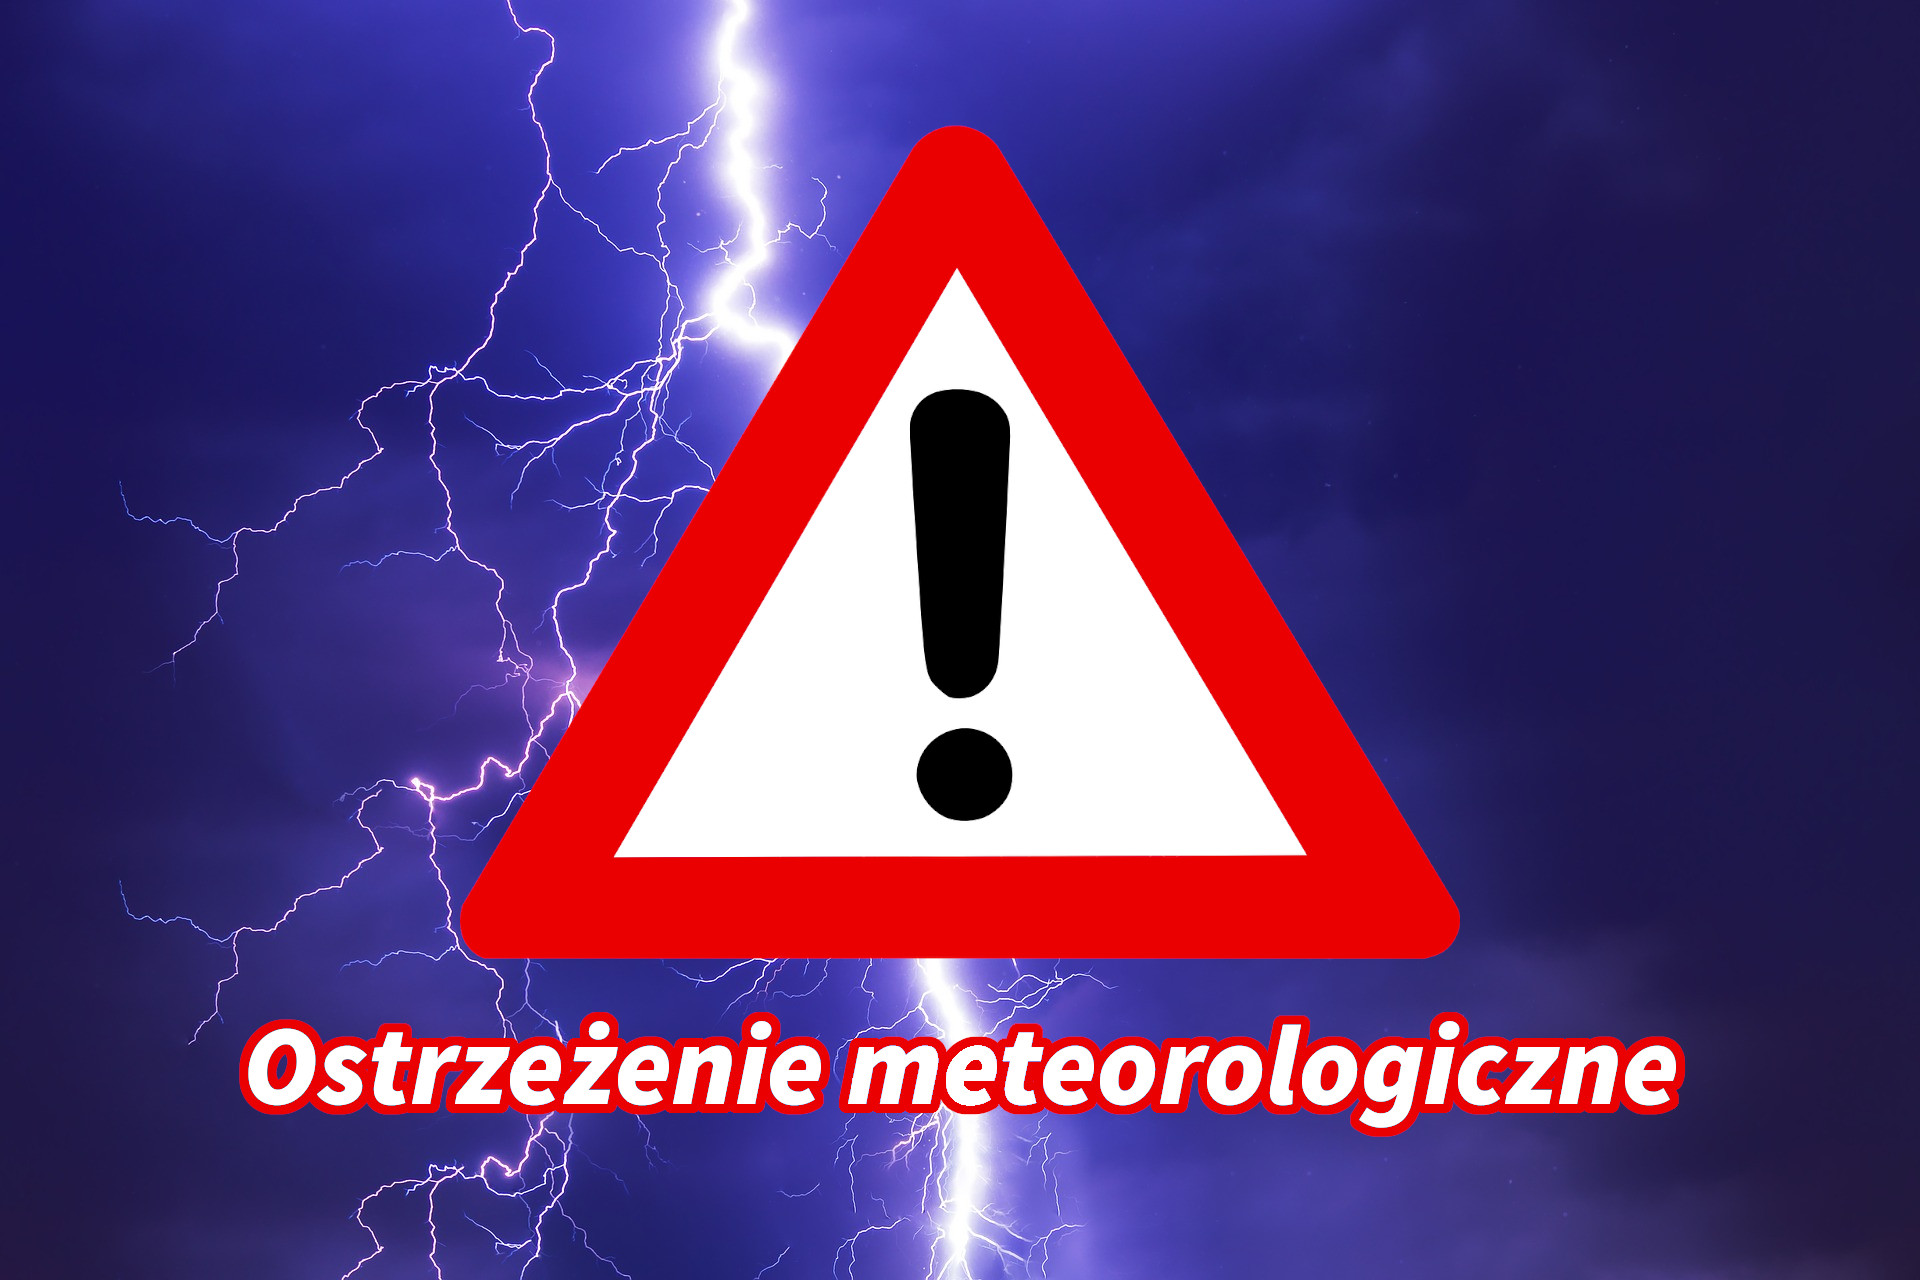 Ostrzeżenia meteorologiczne zbiorczo nr 249 - Burze/Upał